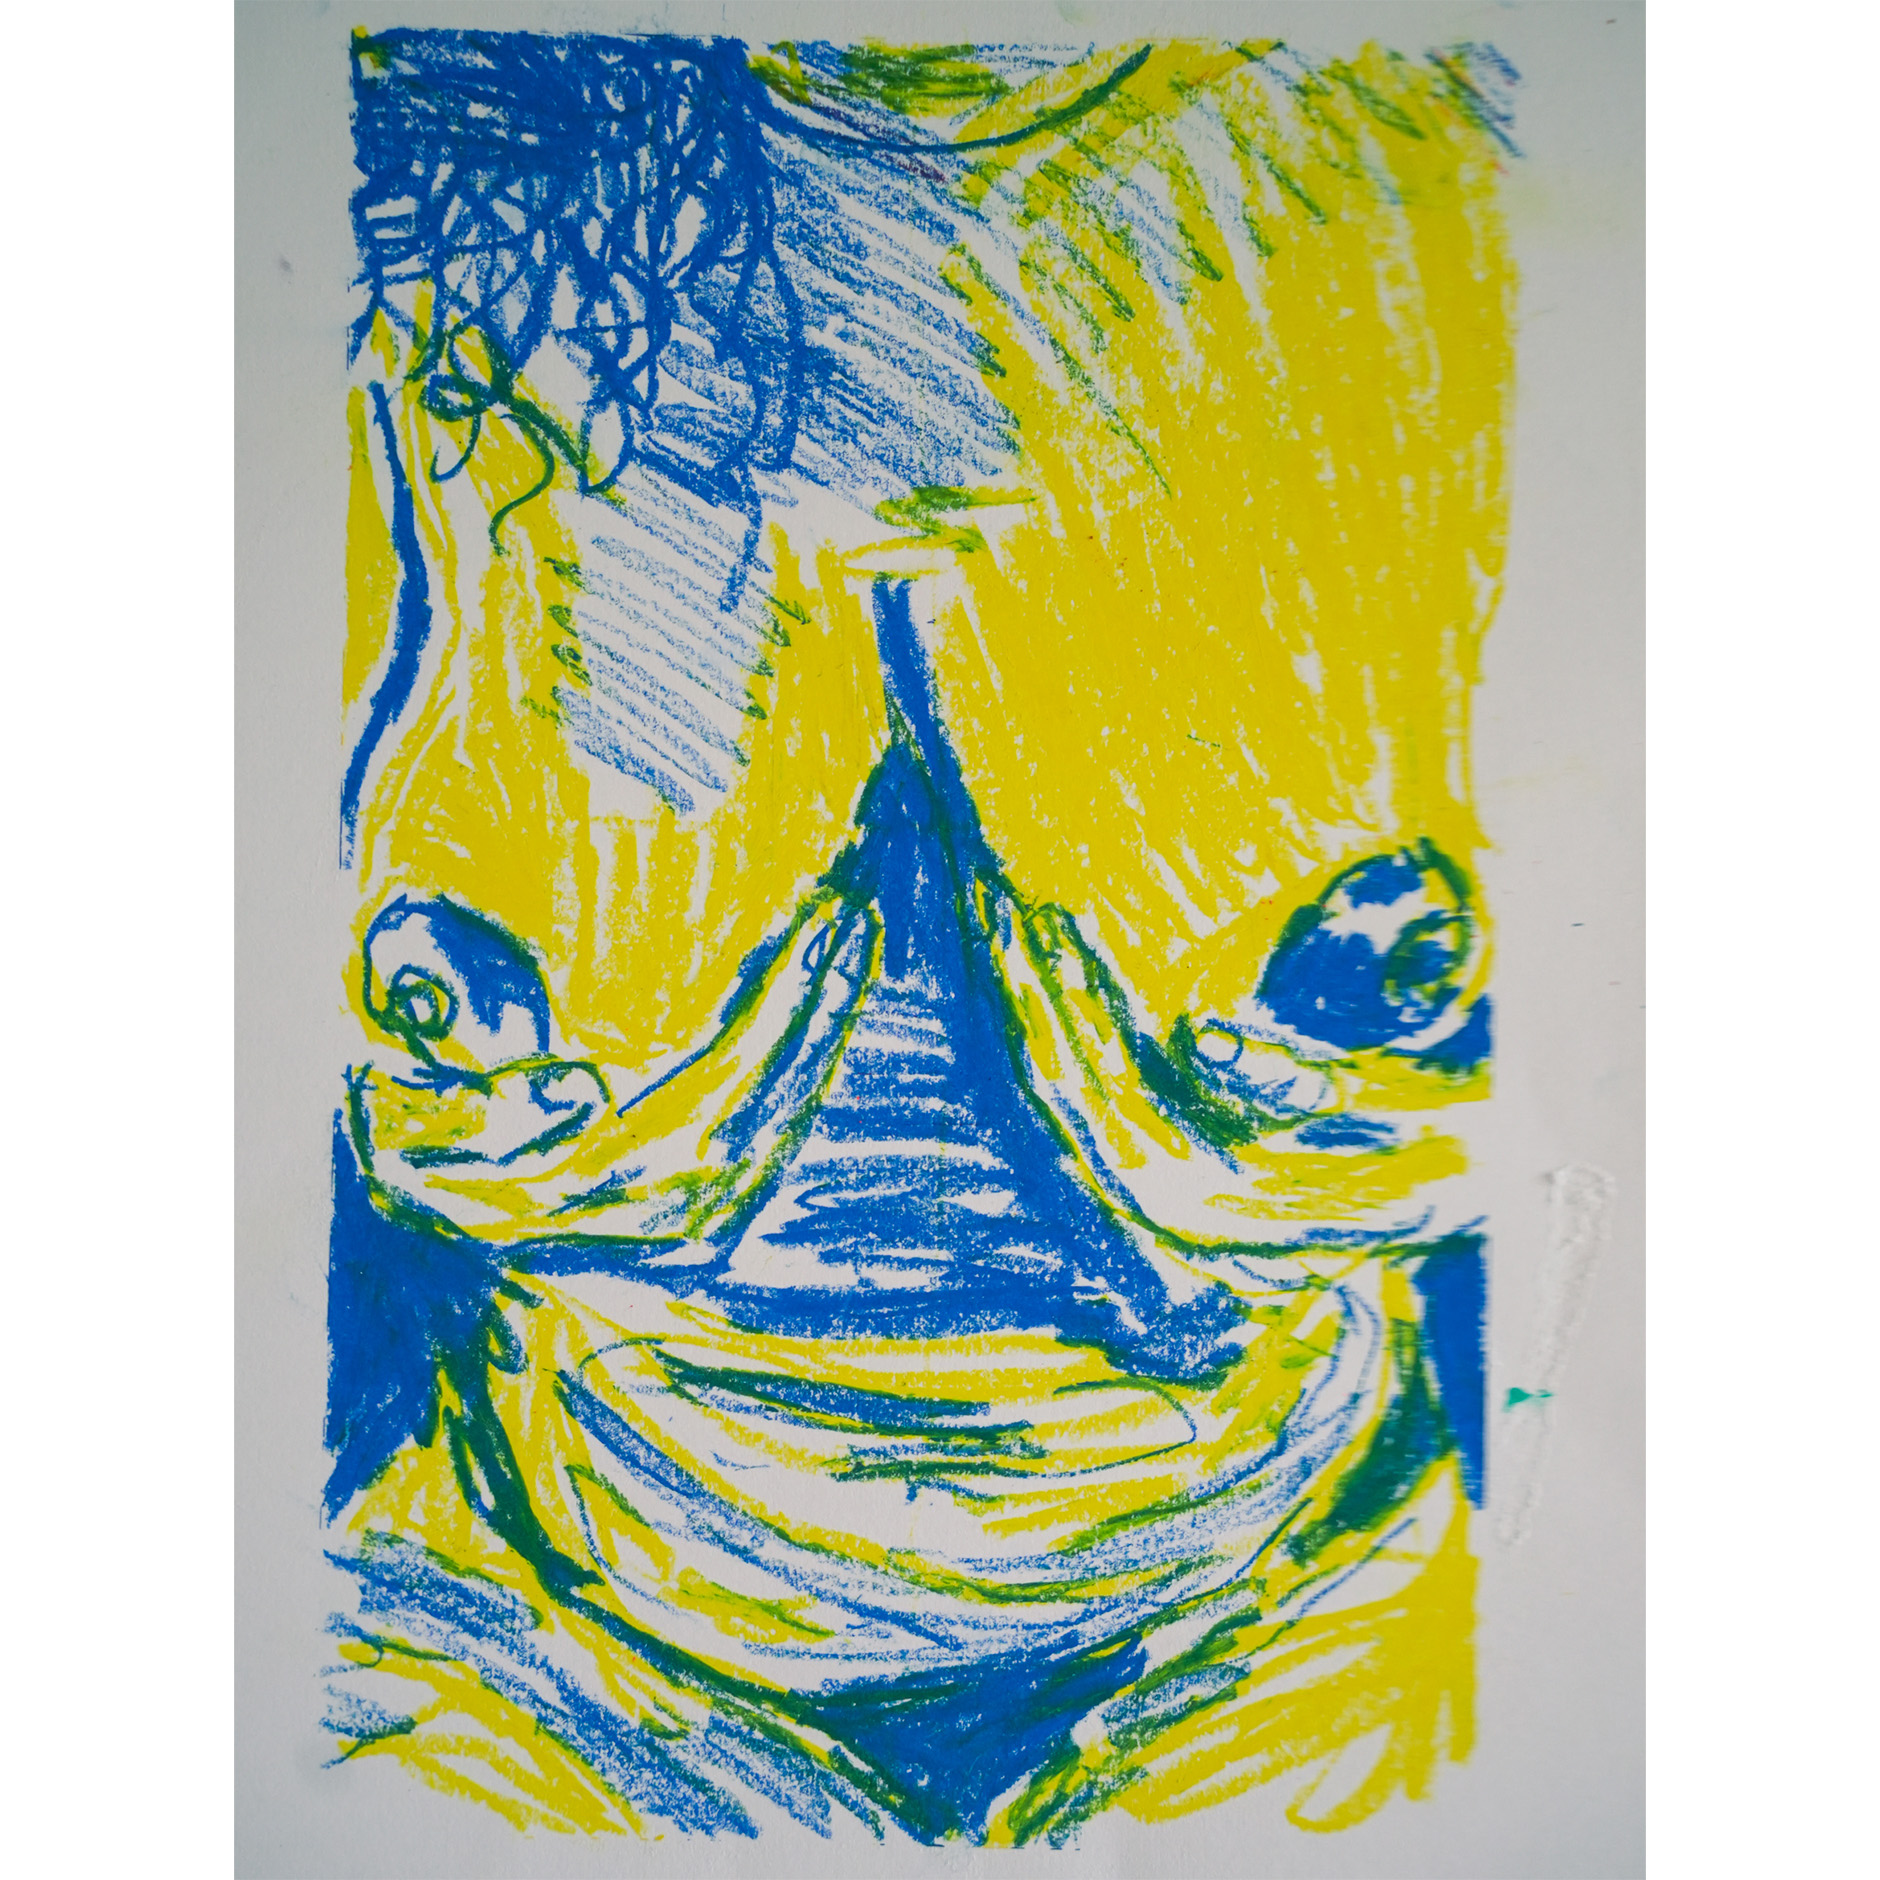 Maison-Soeurs-Noun-Tete-pa-jen-tro-lou-pou-lestomak-peinture-acrylique-et-pastel-a-lhuile-sur-papier-2023-42x29,5cm-bleu-jaune